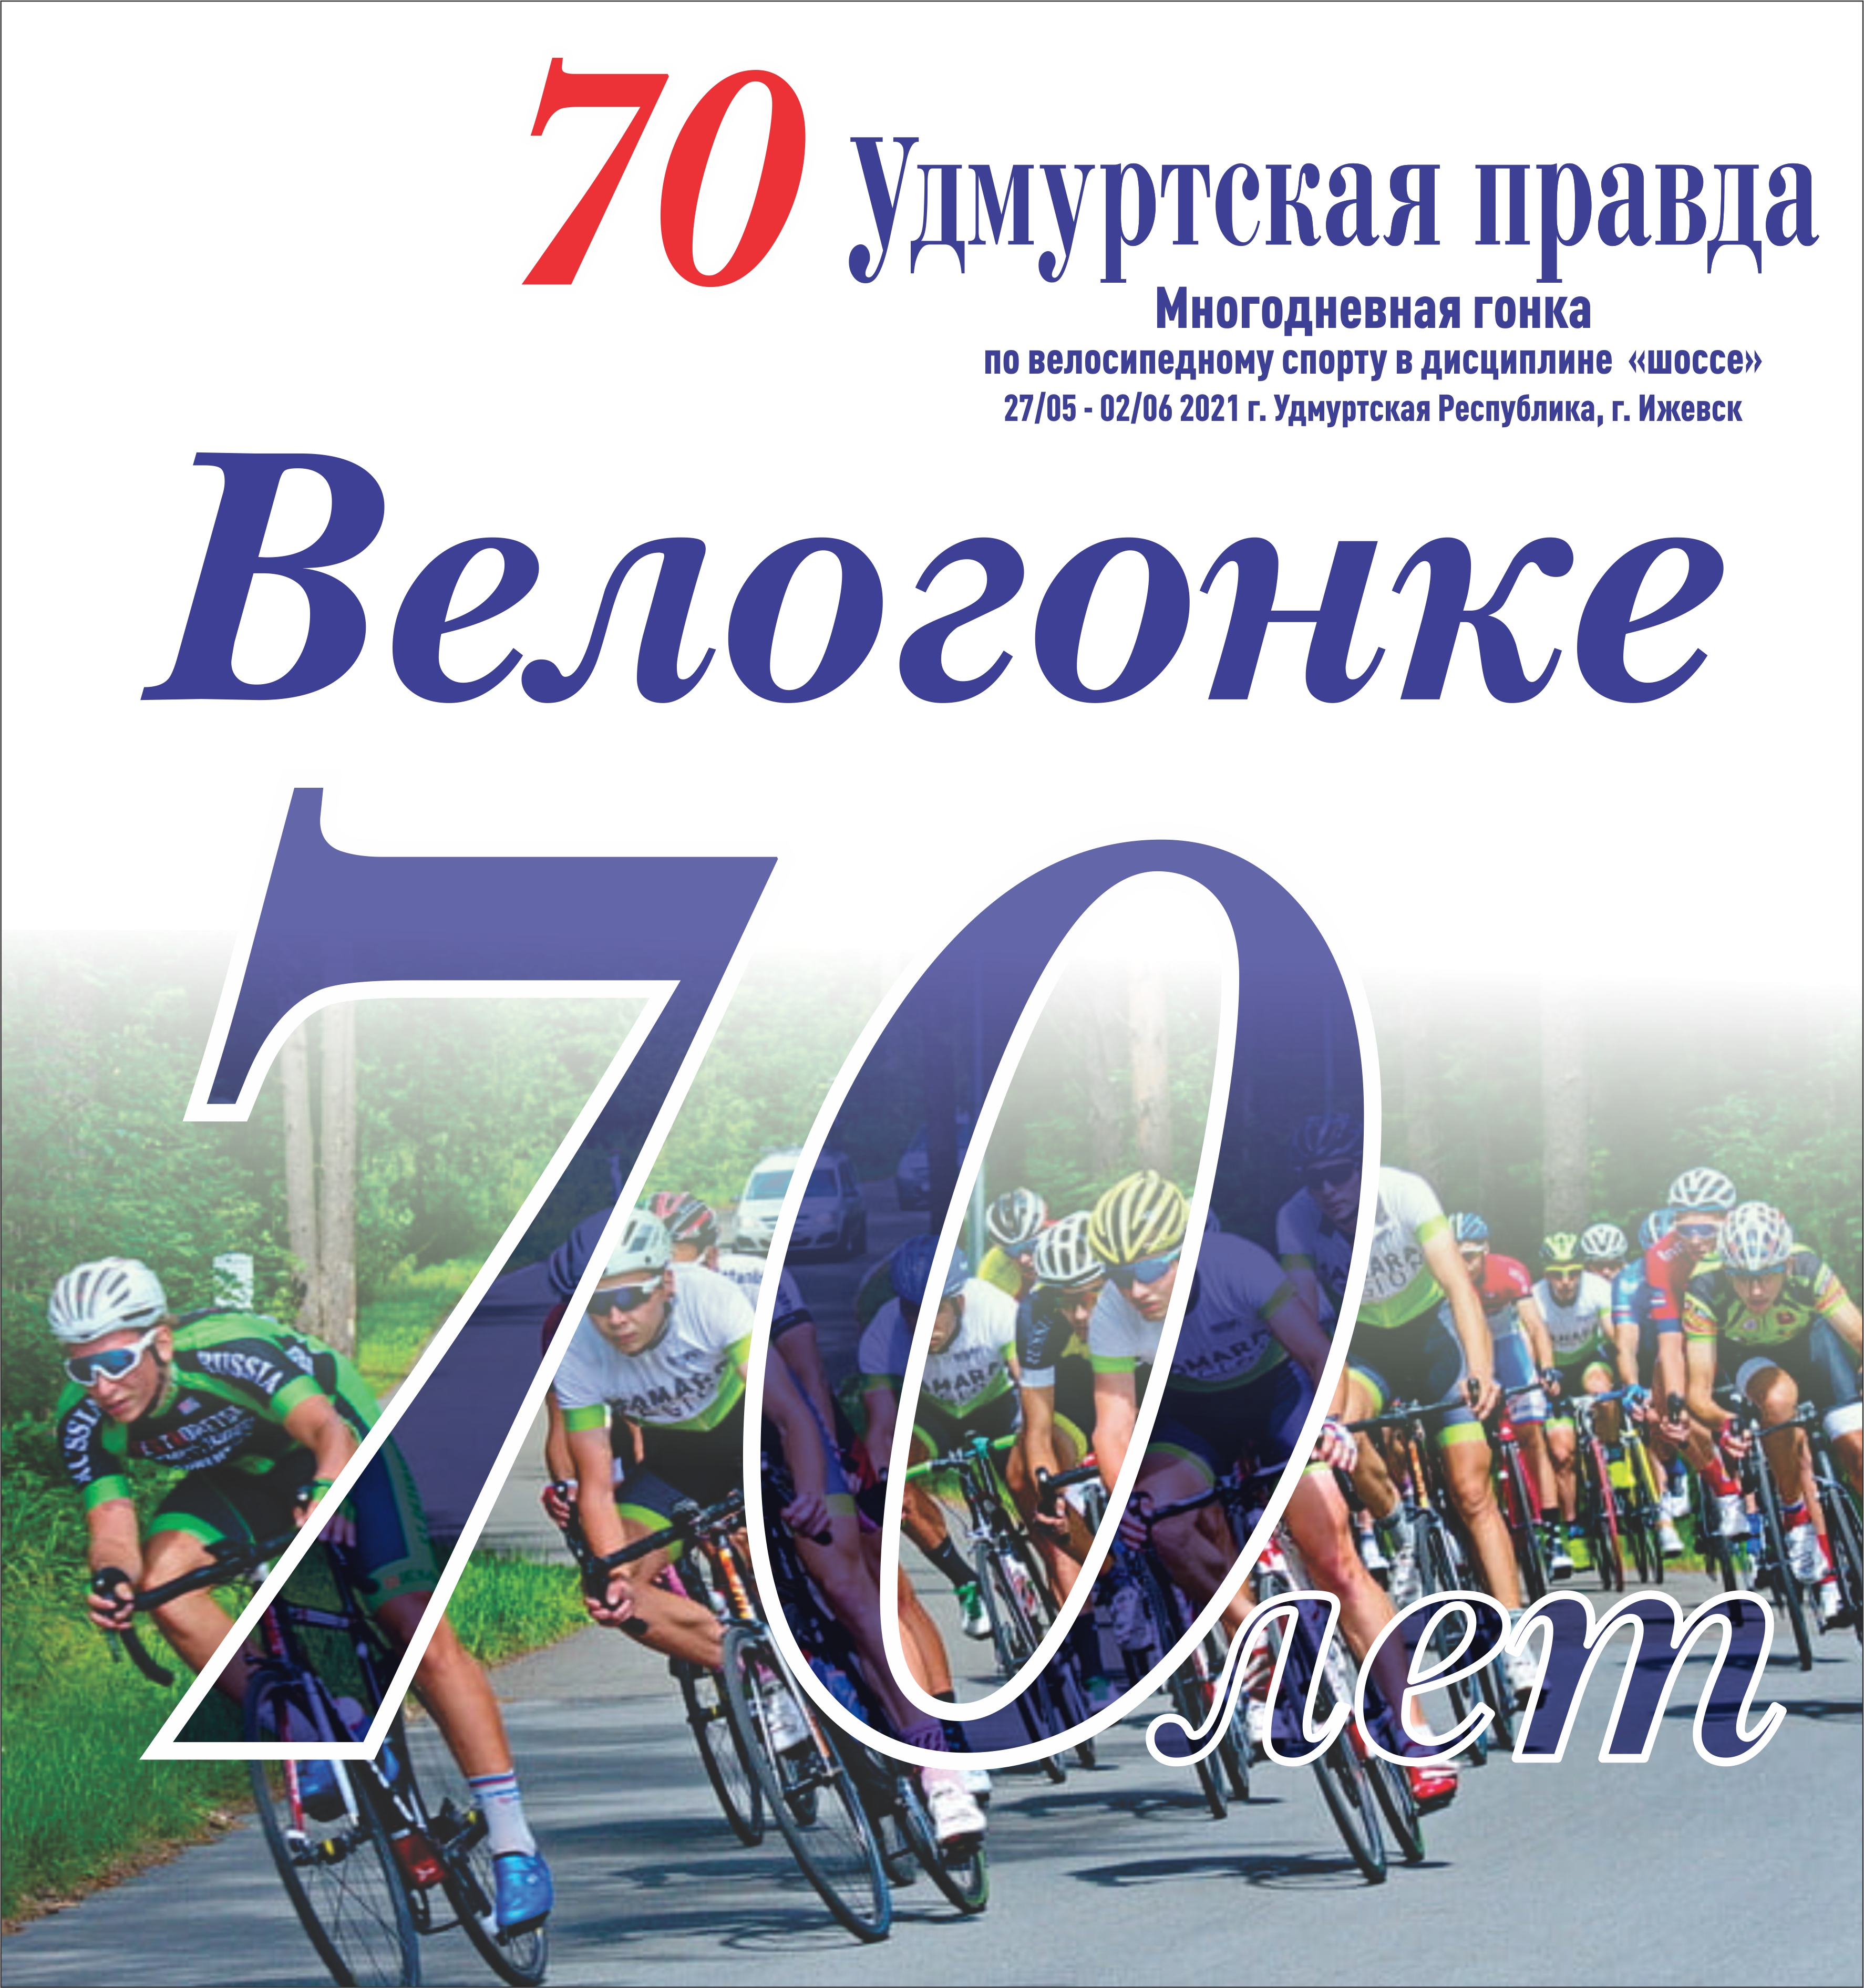 Всероссийские соревнования, 70-ая юбилейная многодневная велосипедная гонка 